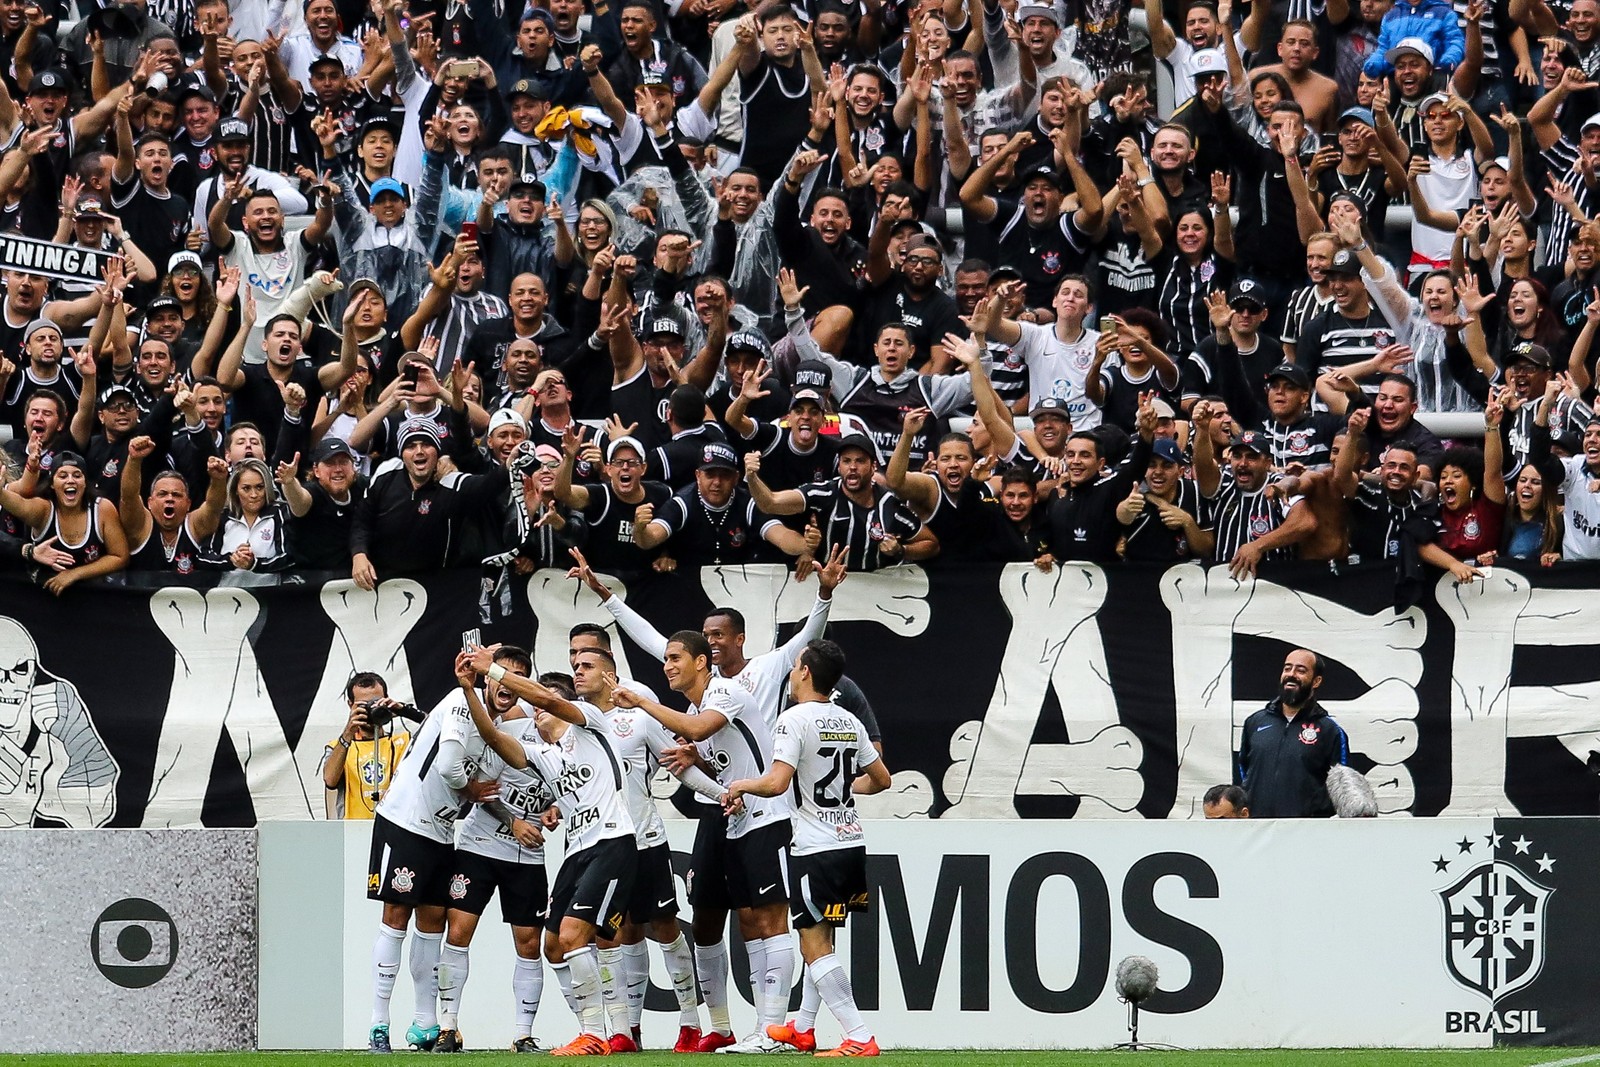 Corinthians vem em segundo lugar com 15,5% dos torcedores ouvidos; com a margem de erro, varia entre 13,9% e 17% — Foto: Marcello Fim / Raw Image / Agência O Globo